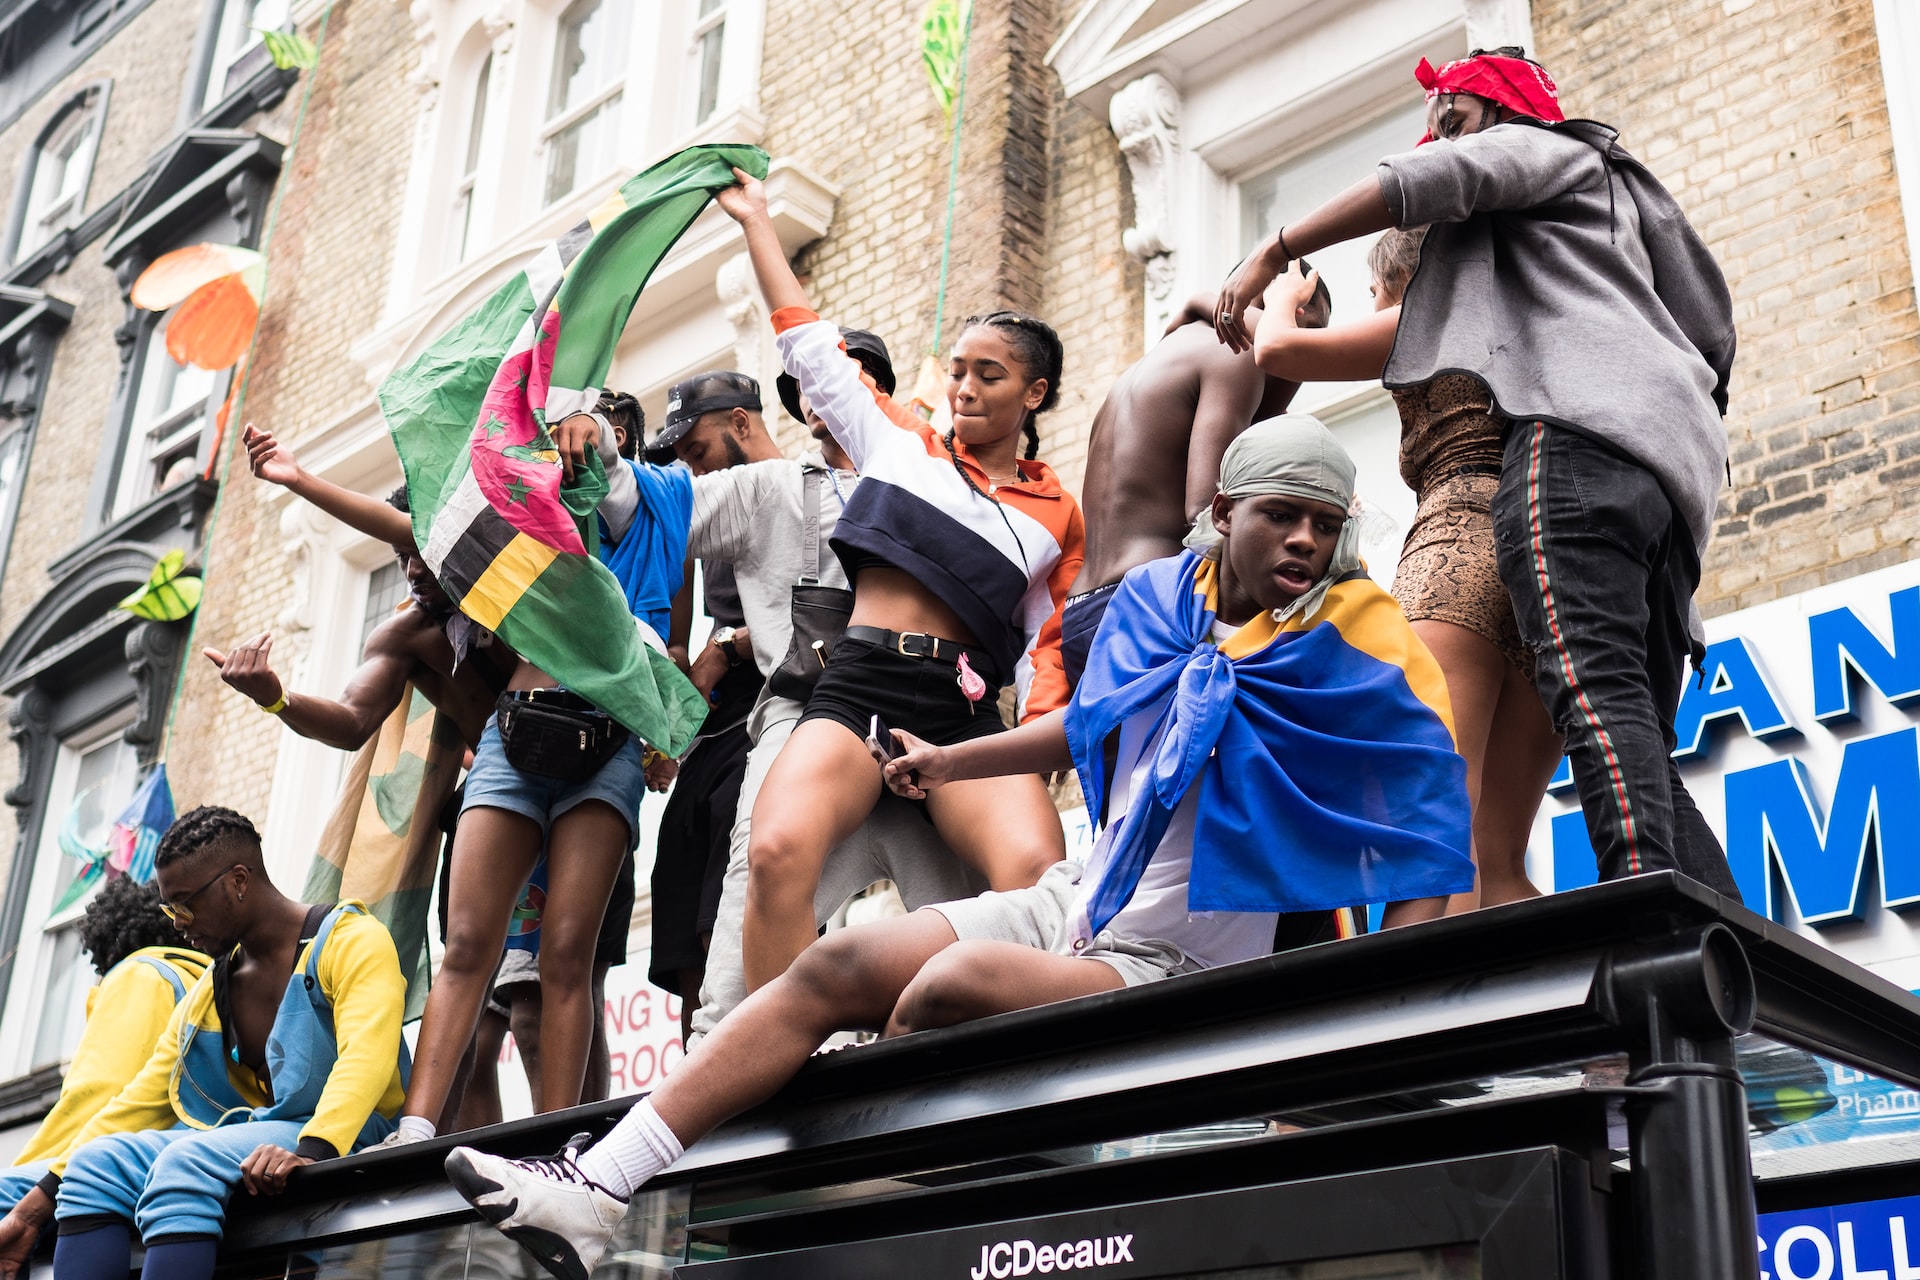 hk_c_Notting Hill Carnival-glodi-miessi--unsplash.jpg